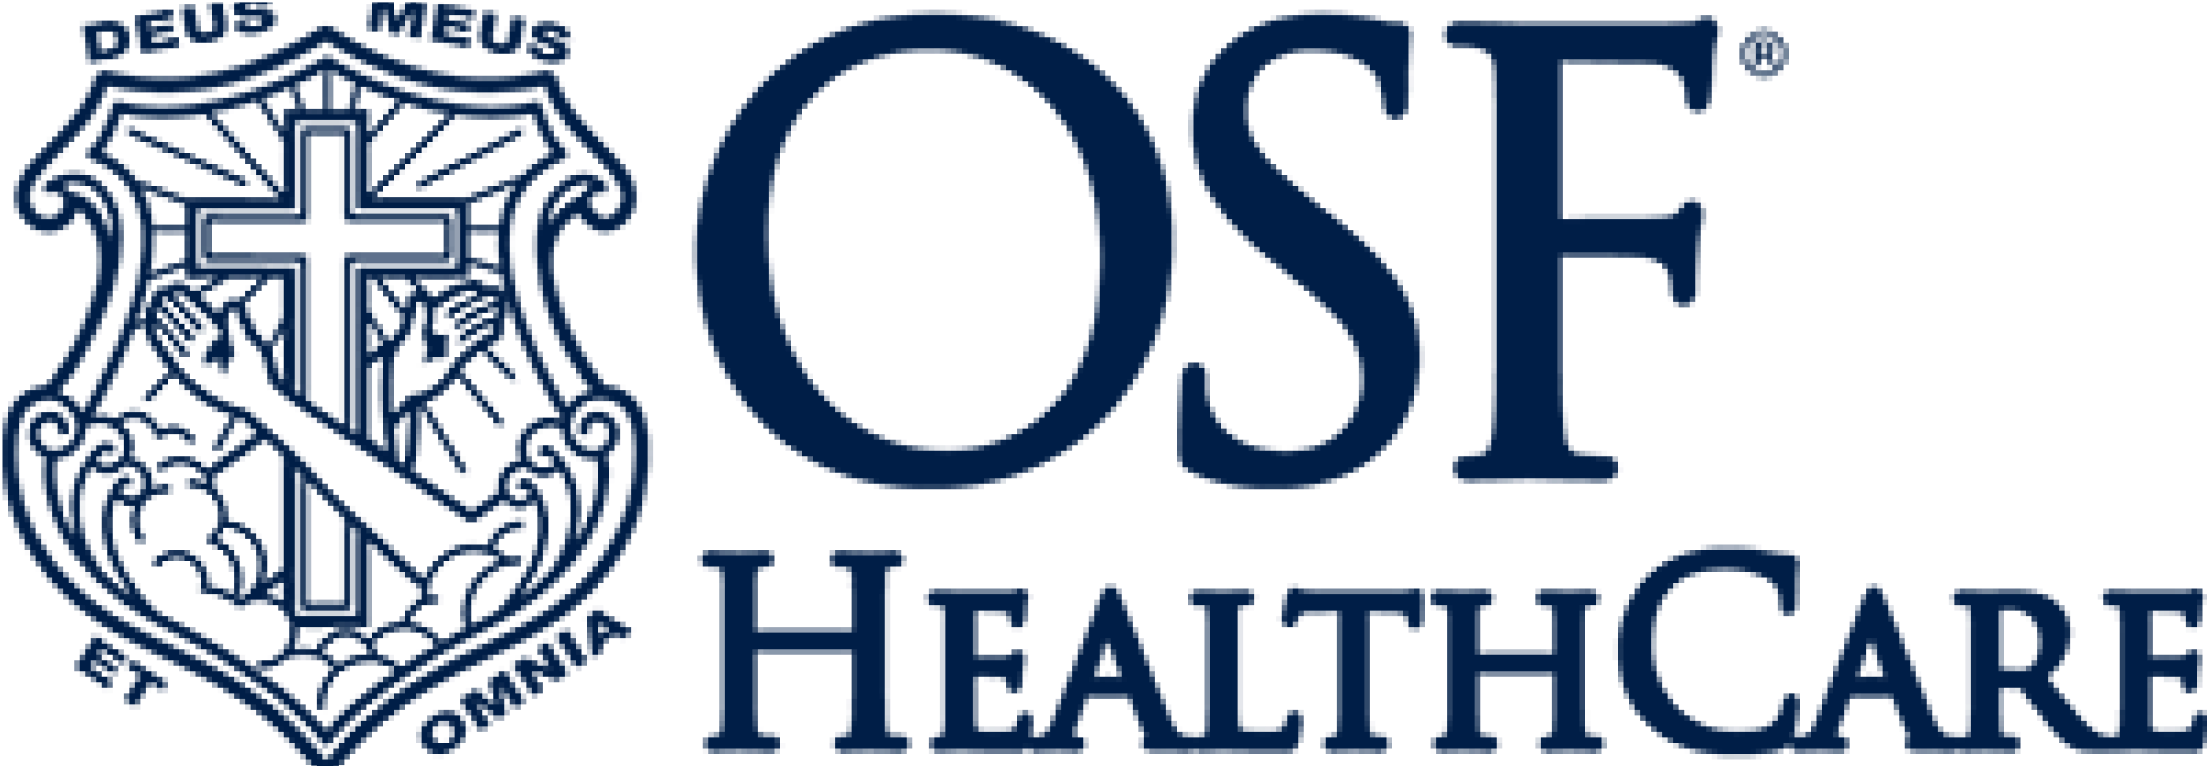 OSF_Healthcare